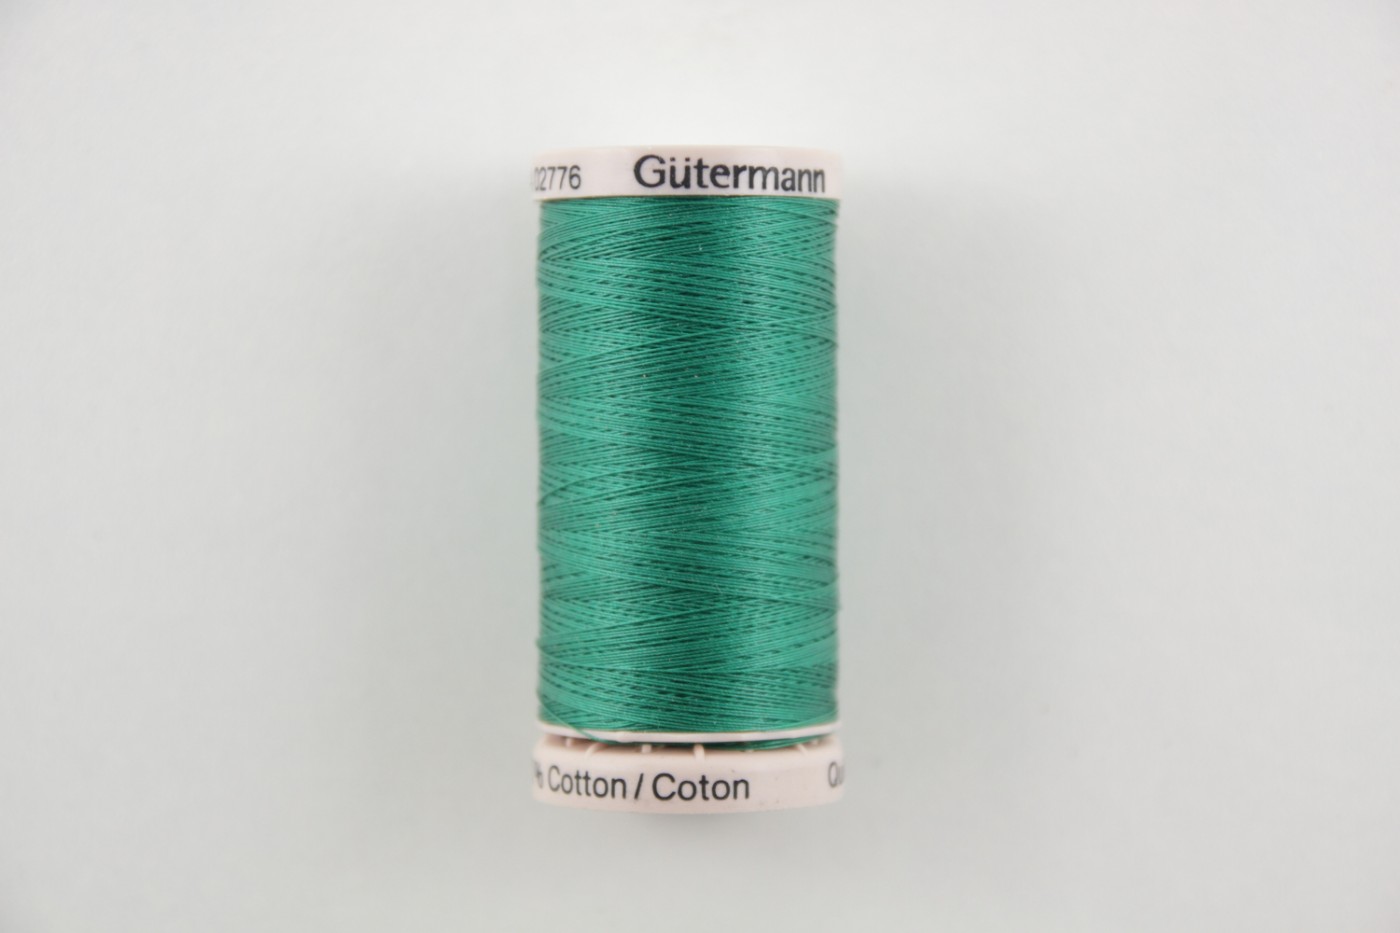 quiltgaren gutermann-groen-8244